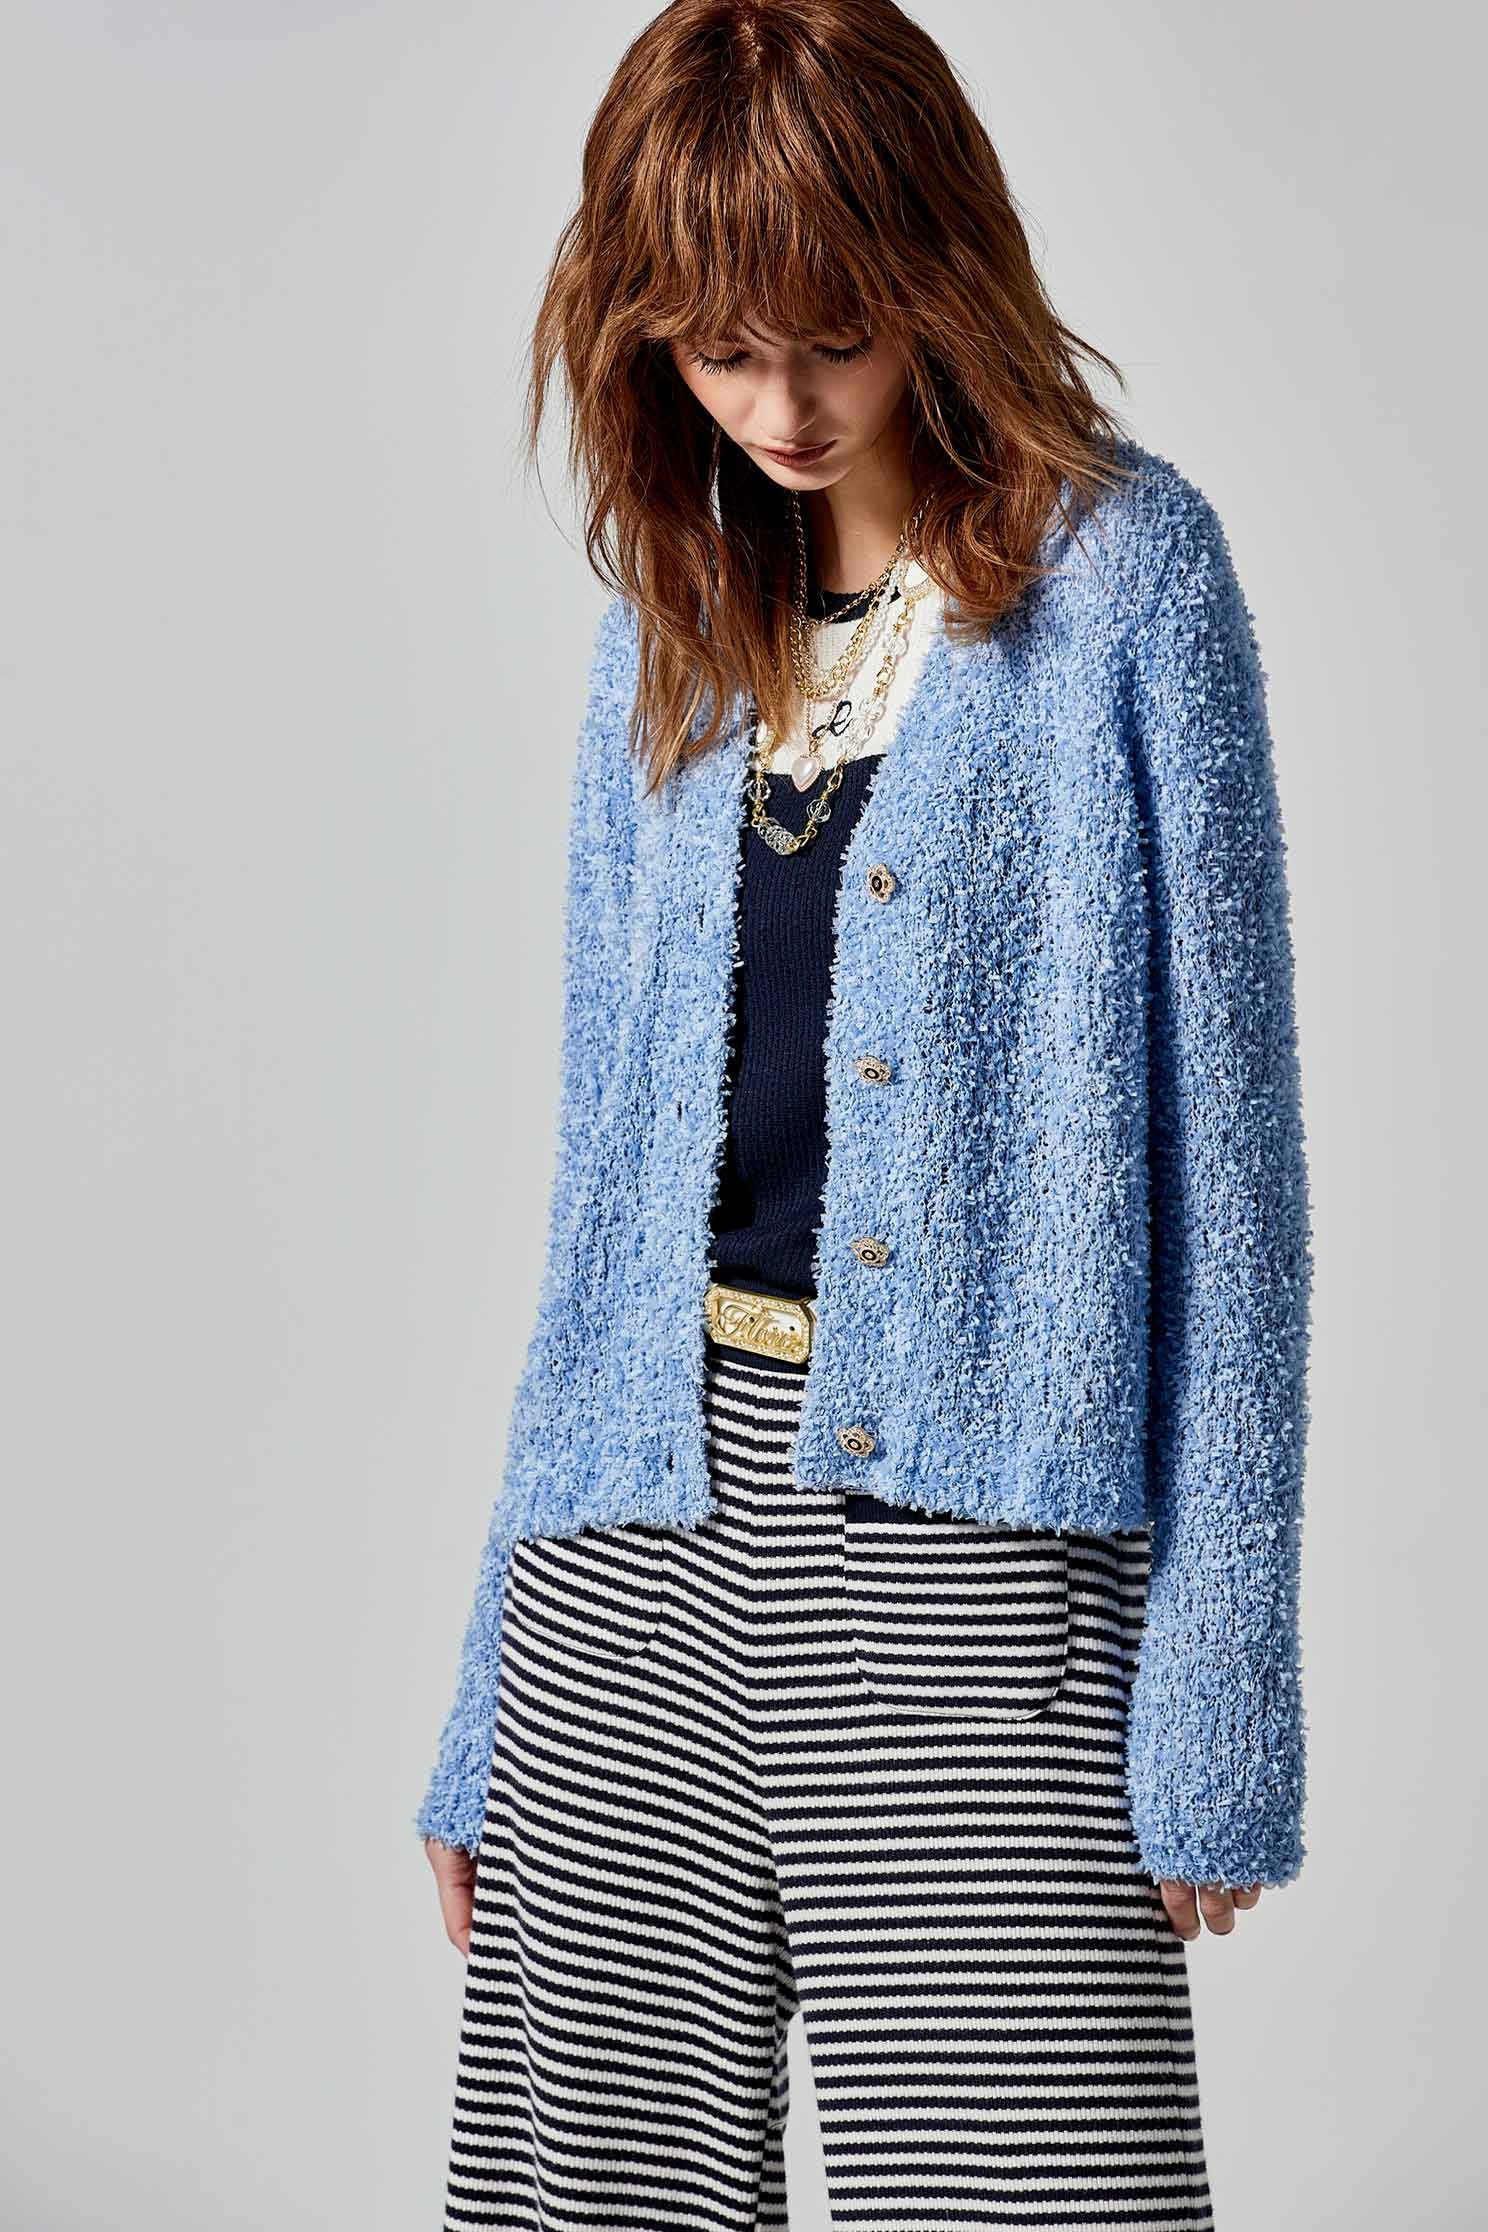 寧靜藍蝴蝶紗針織外套寧靜藍蝴蝶紗針織外套,人氣商品,外套,春夏穿搭,針織,針織外套